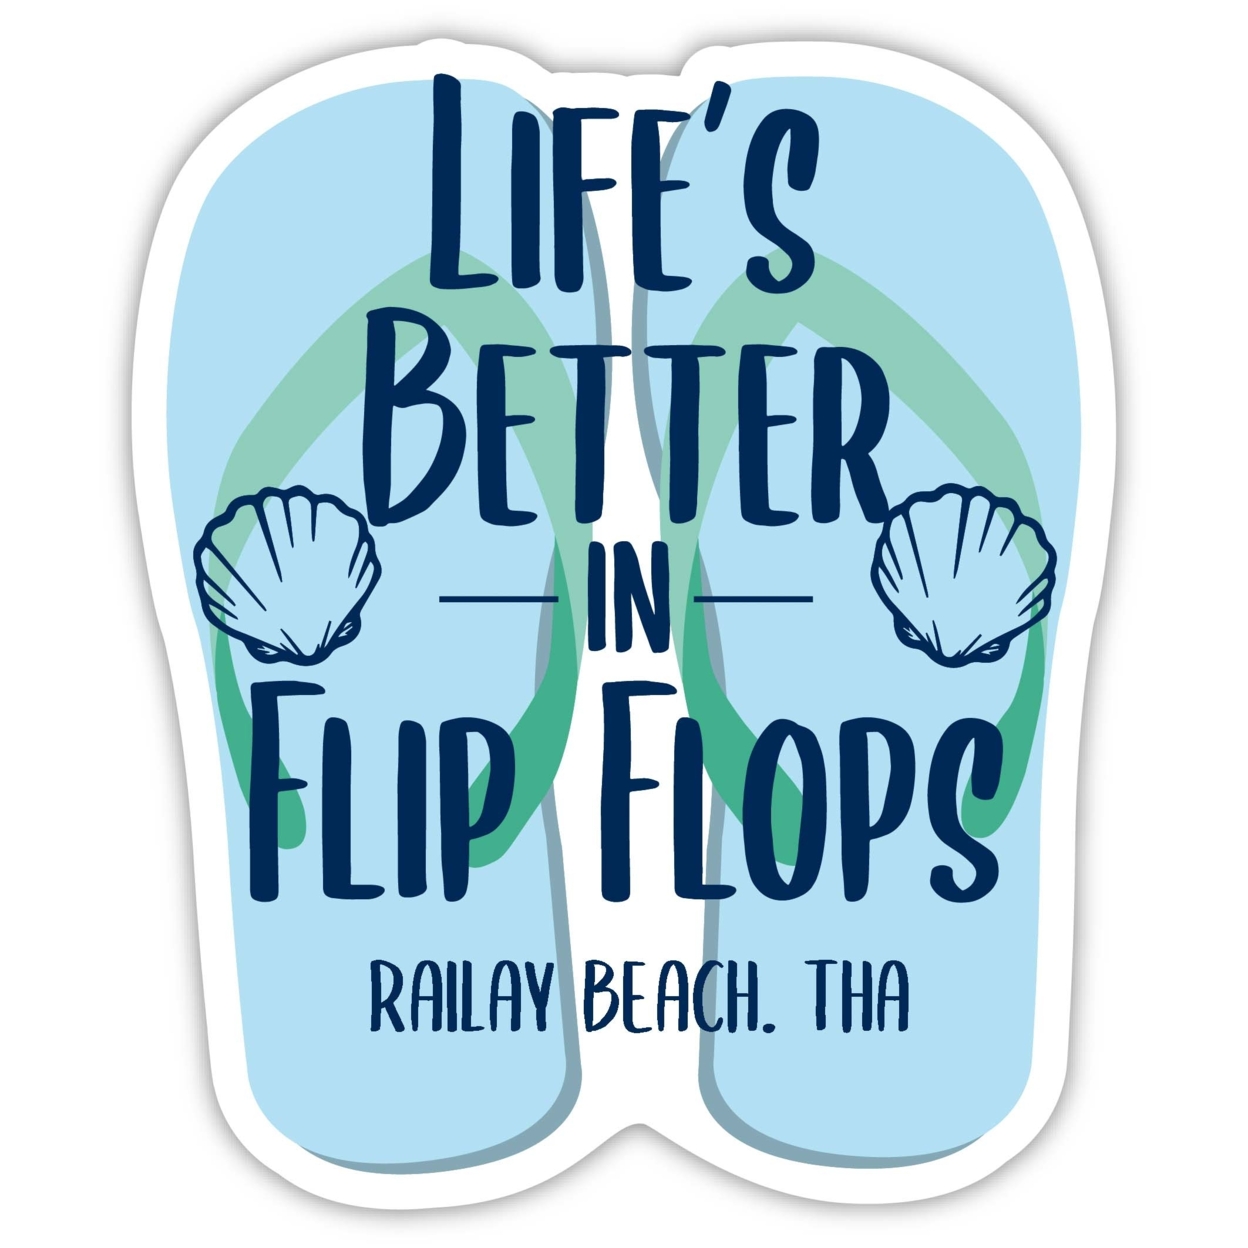 Railay Beach Thailand Souvenir 4 Inch Vinyl Decal Sticker Flip Flop Design